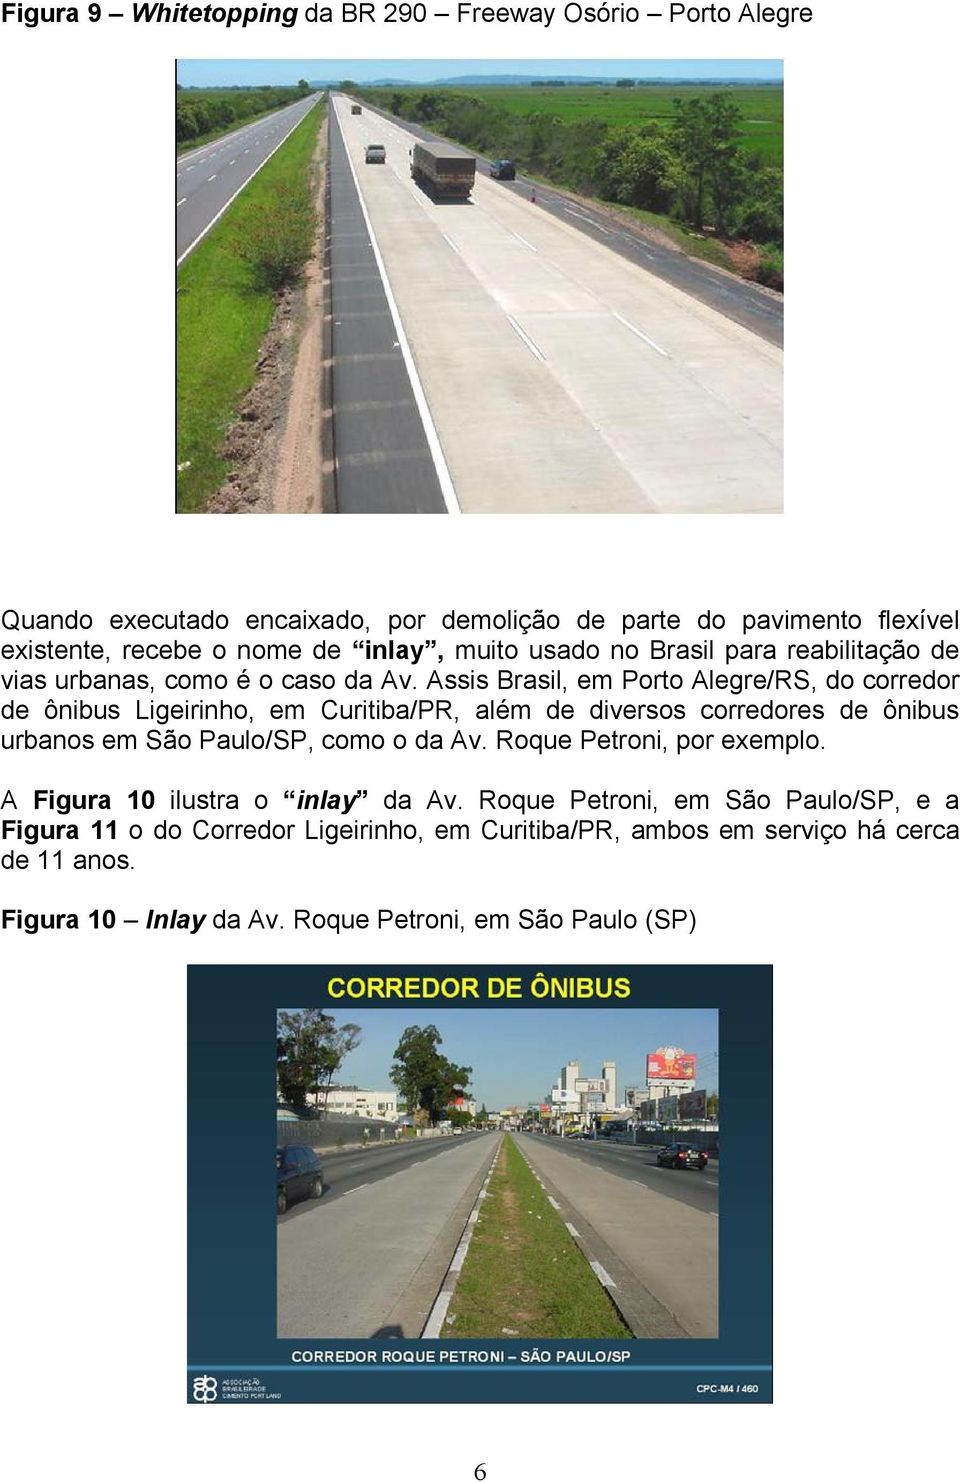 Assis Brasil, em Porto Alegre/RS, do corredor de ônibus Ligeirinho, em Curitiba/PR, além de diversos corredores de ônibus urbanos em São Paulo/SP, como o da Av.